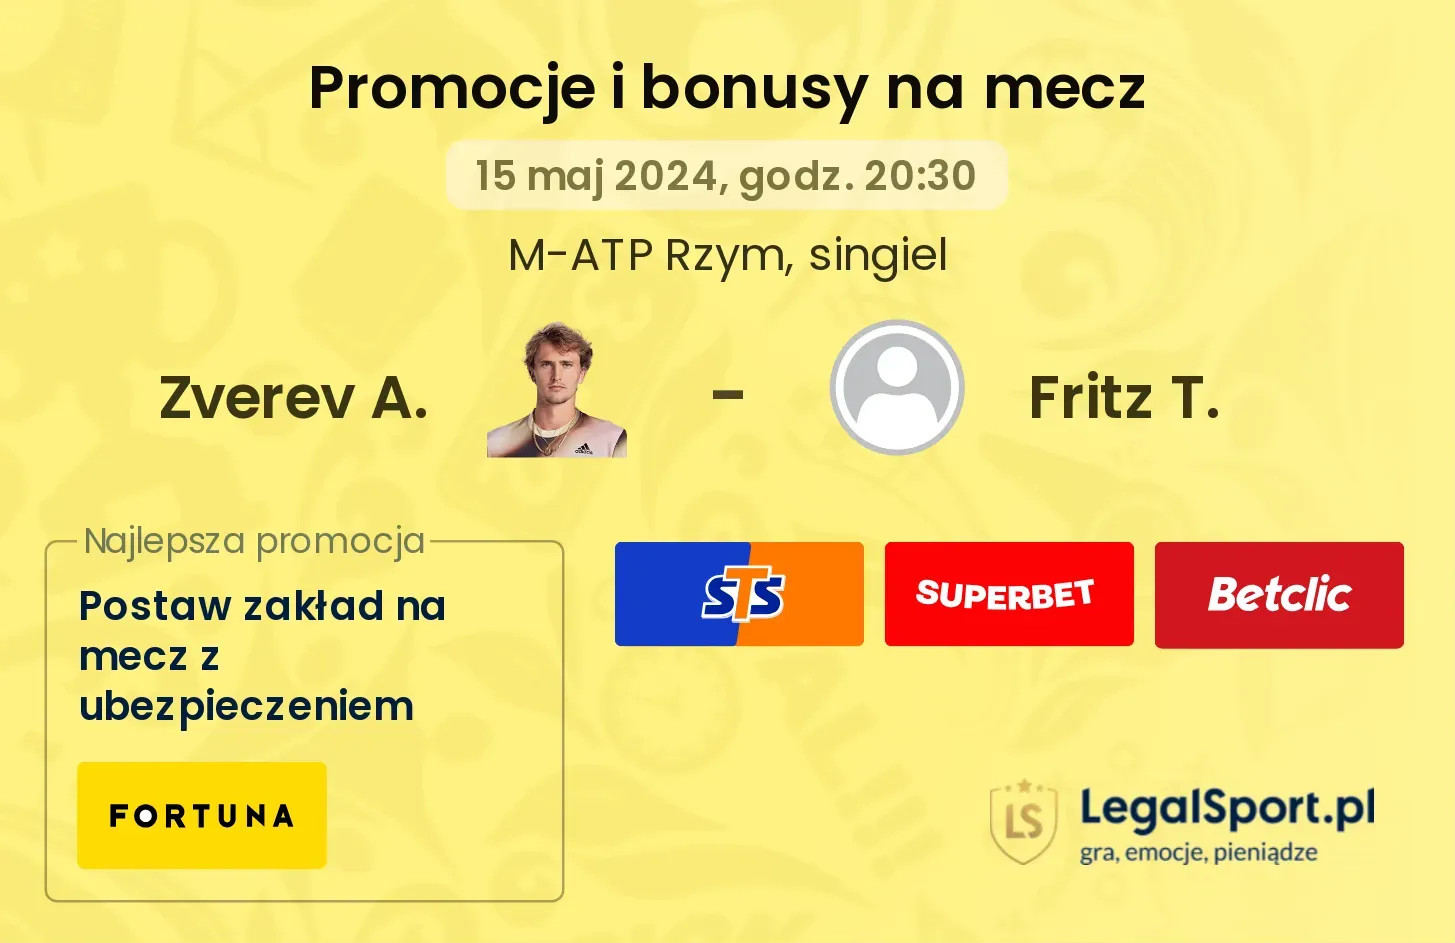 Zverev A. - Fritz T. promocje bonusy na mecz